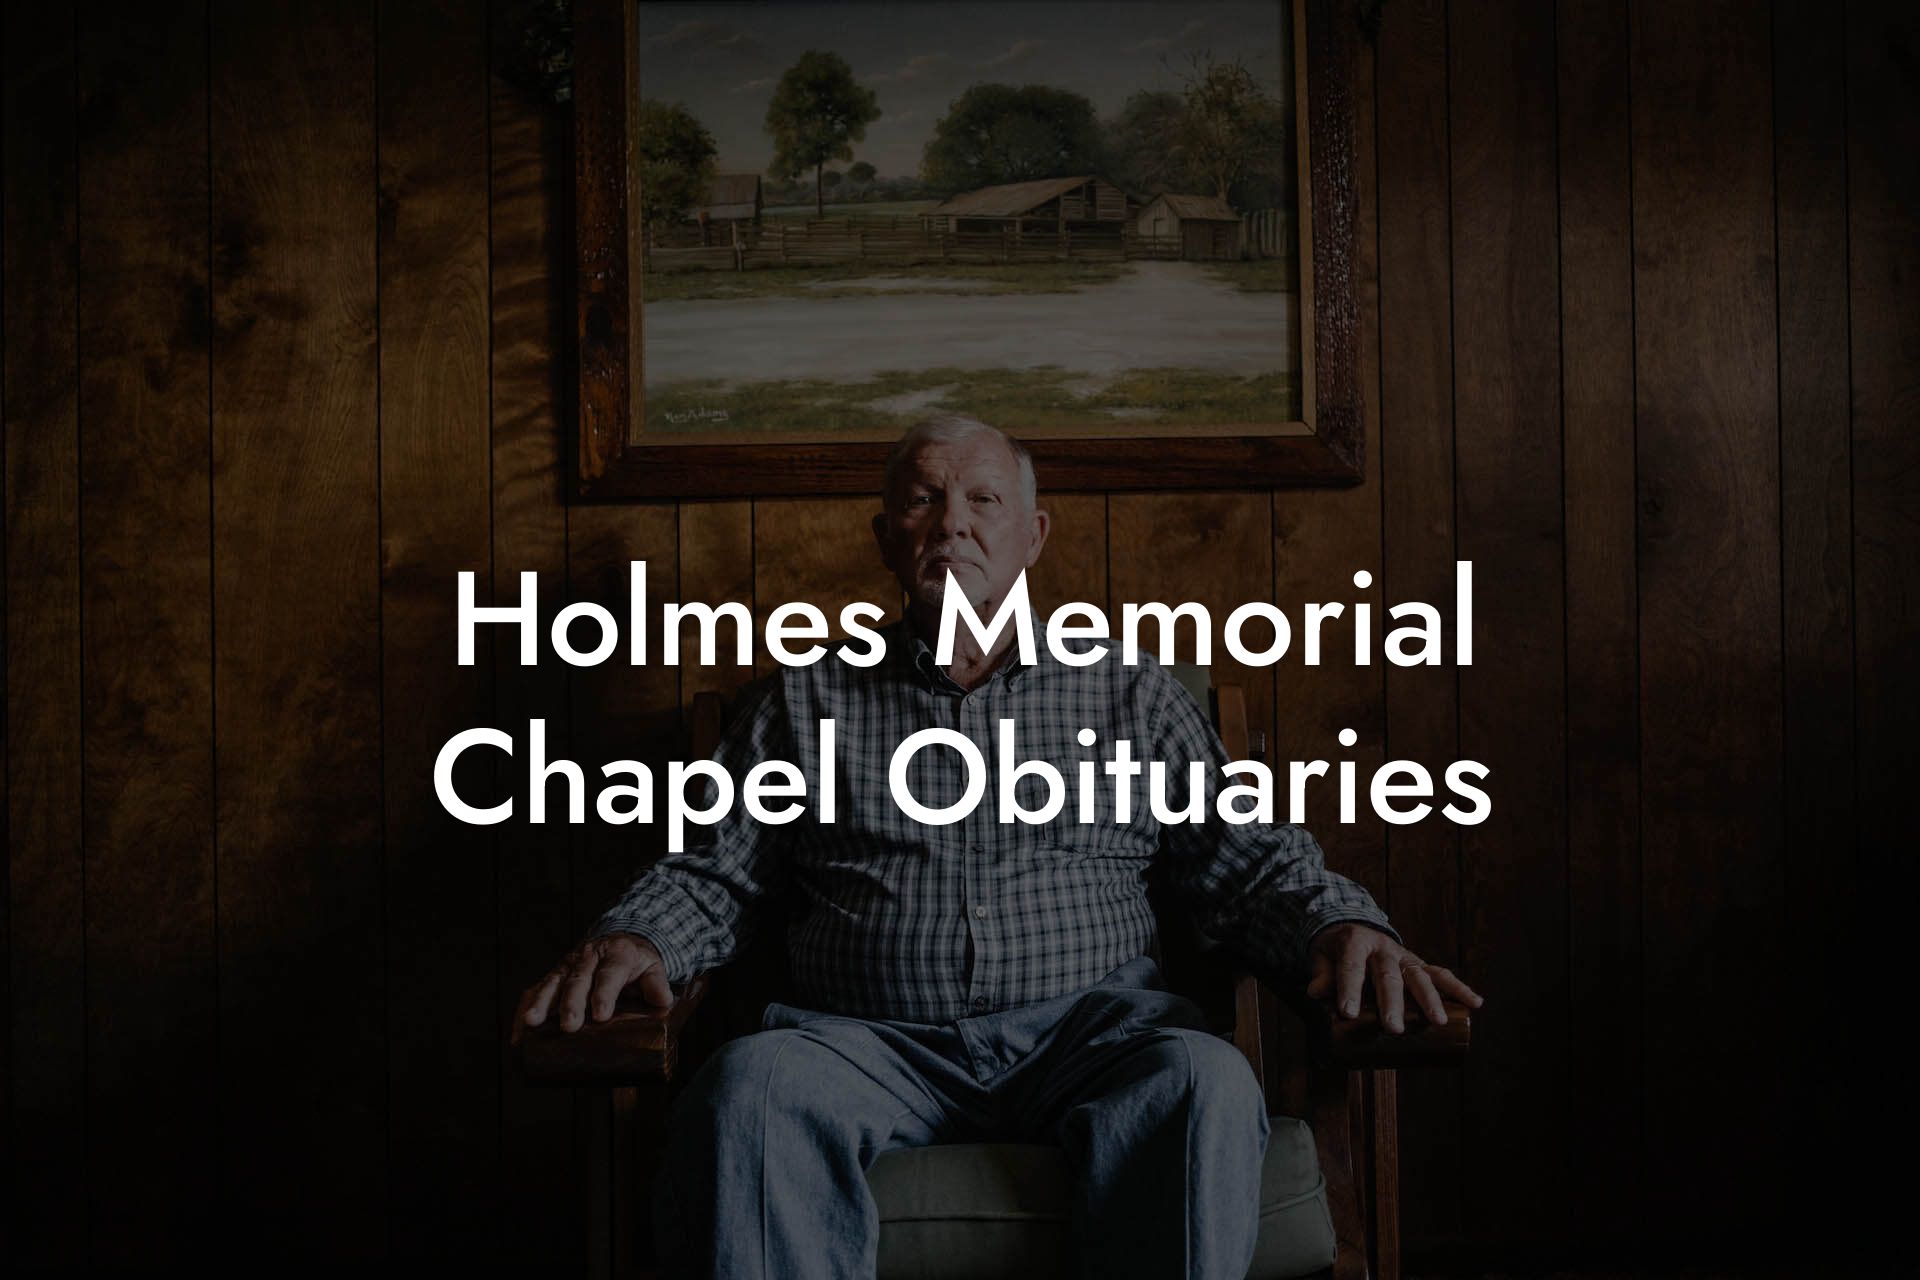 Holmes Memorial Chapel Obituaries